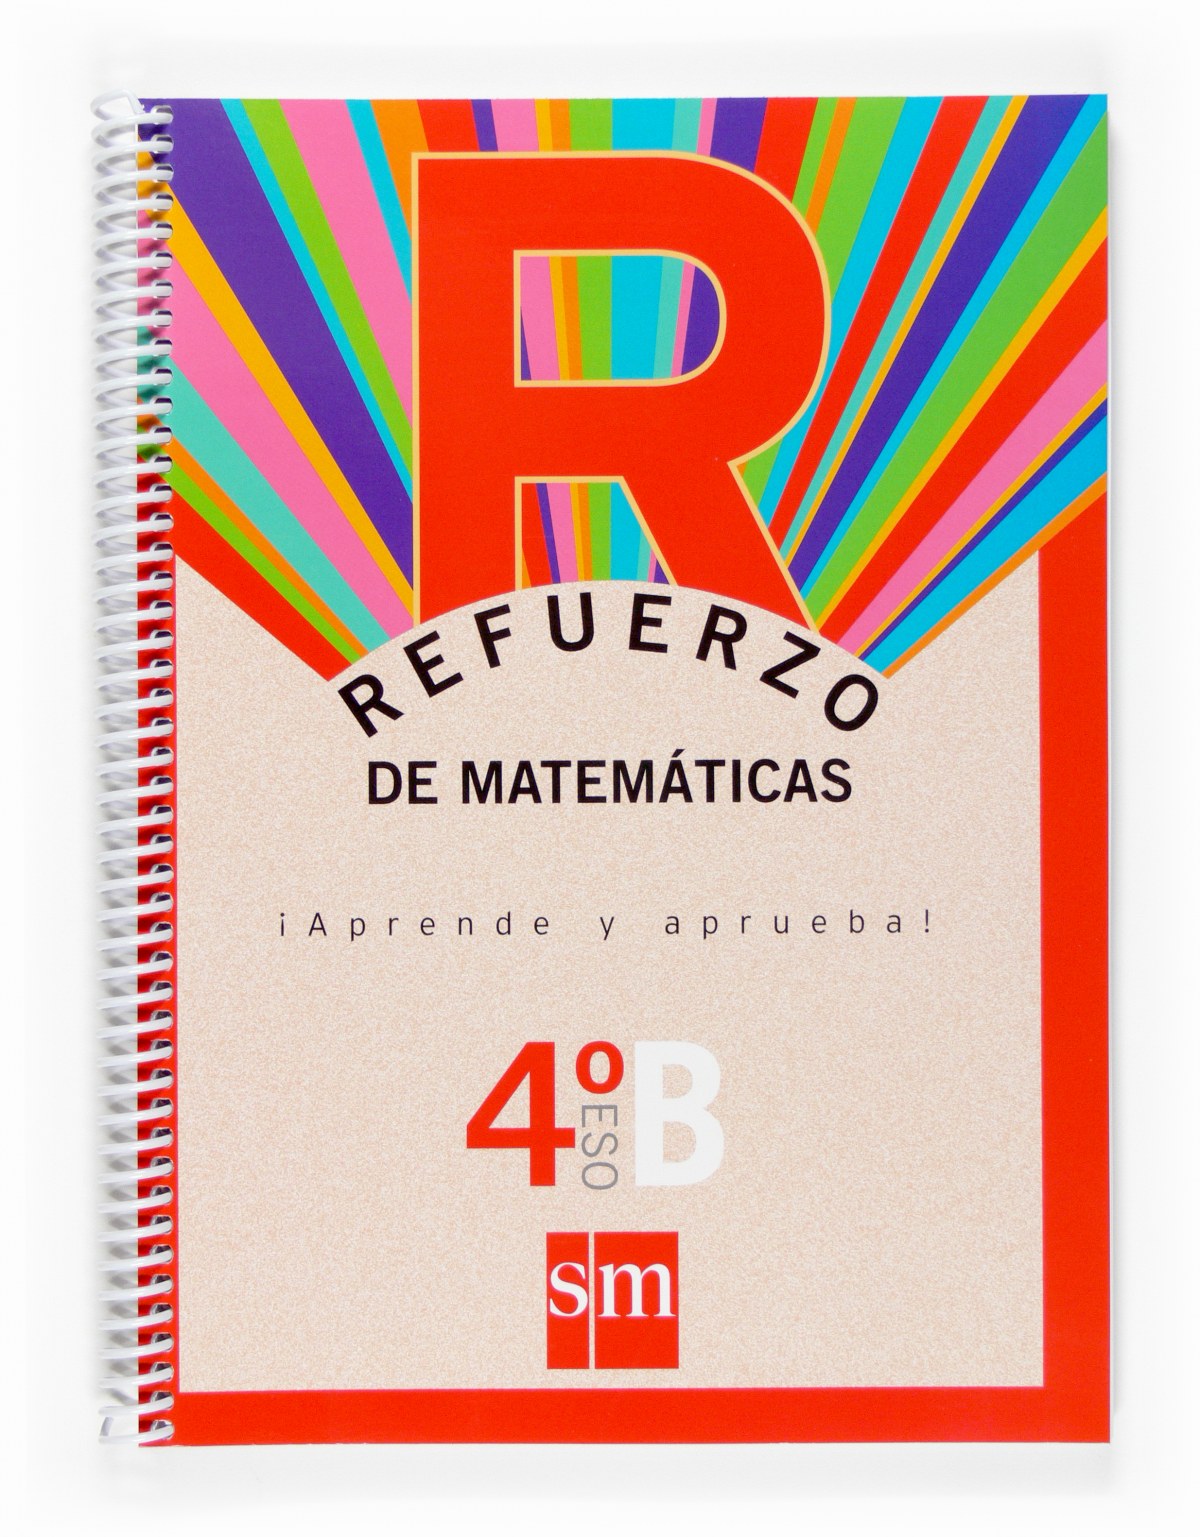 Refuerzo de matemáticas. ¡Aprende y aprueba! Opción B 4ºESO - de los Santos, Mª Isabel/Martínez, Rafael Ángel